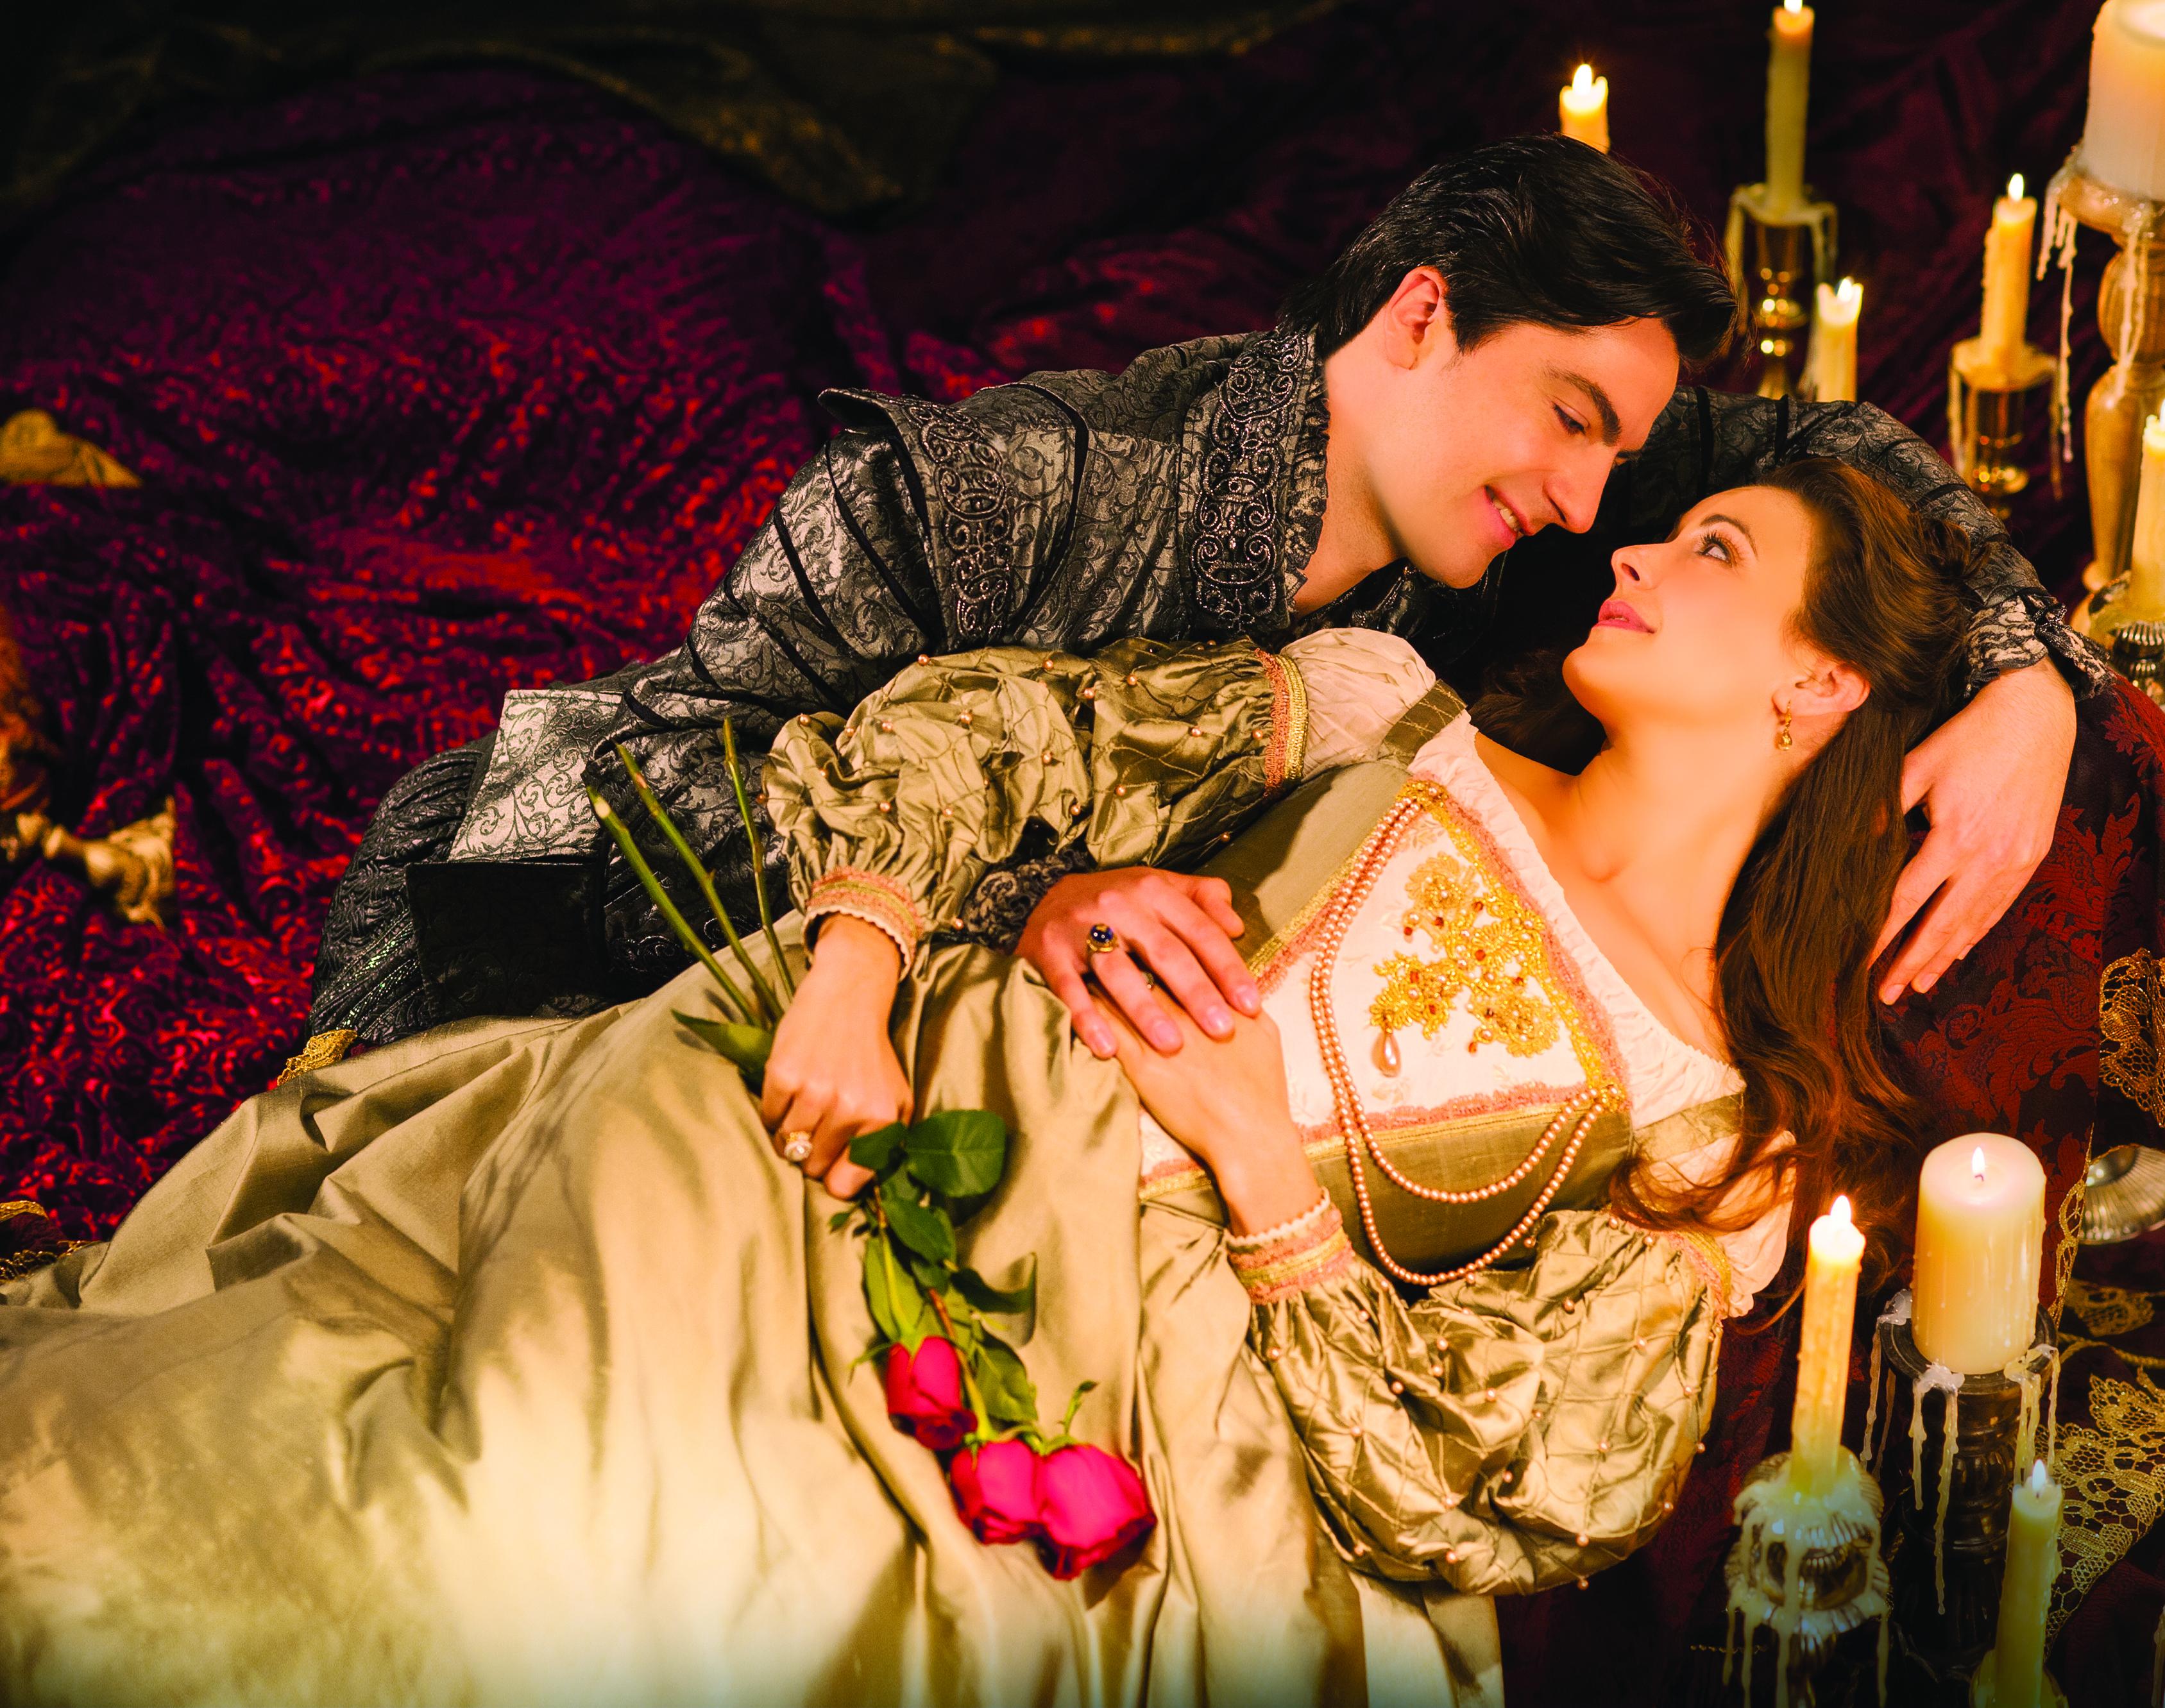 Ромео и Джульетта 2013 поцелуй